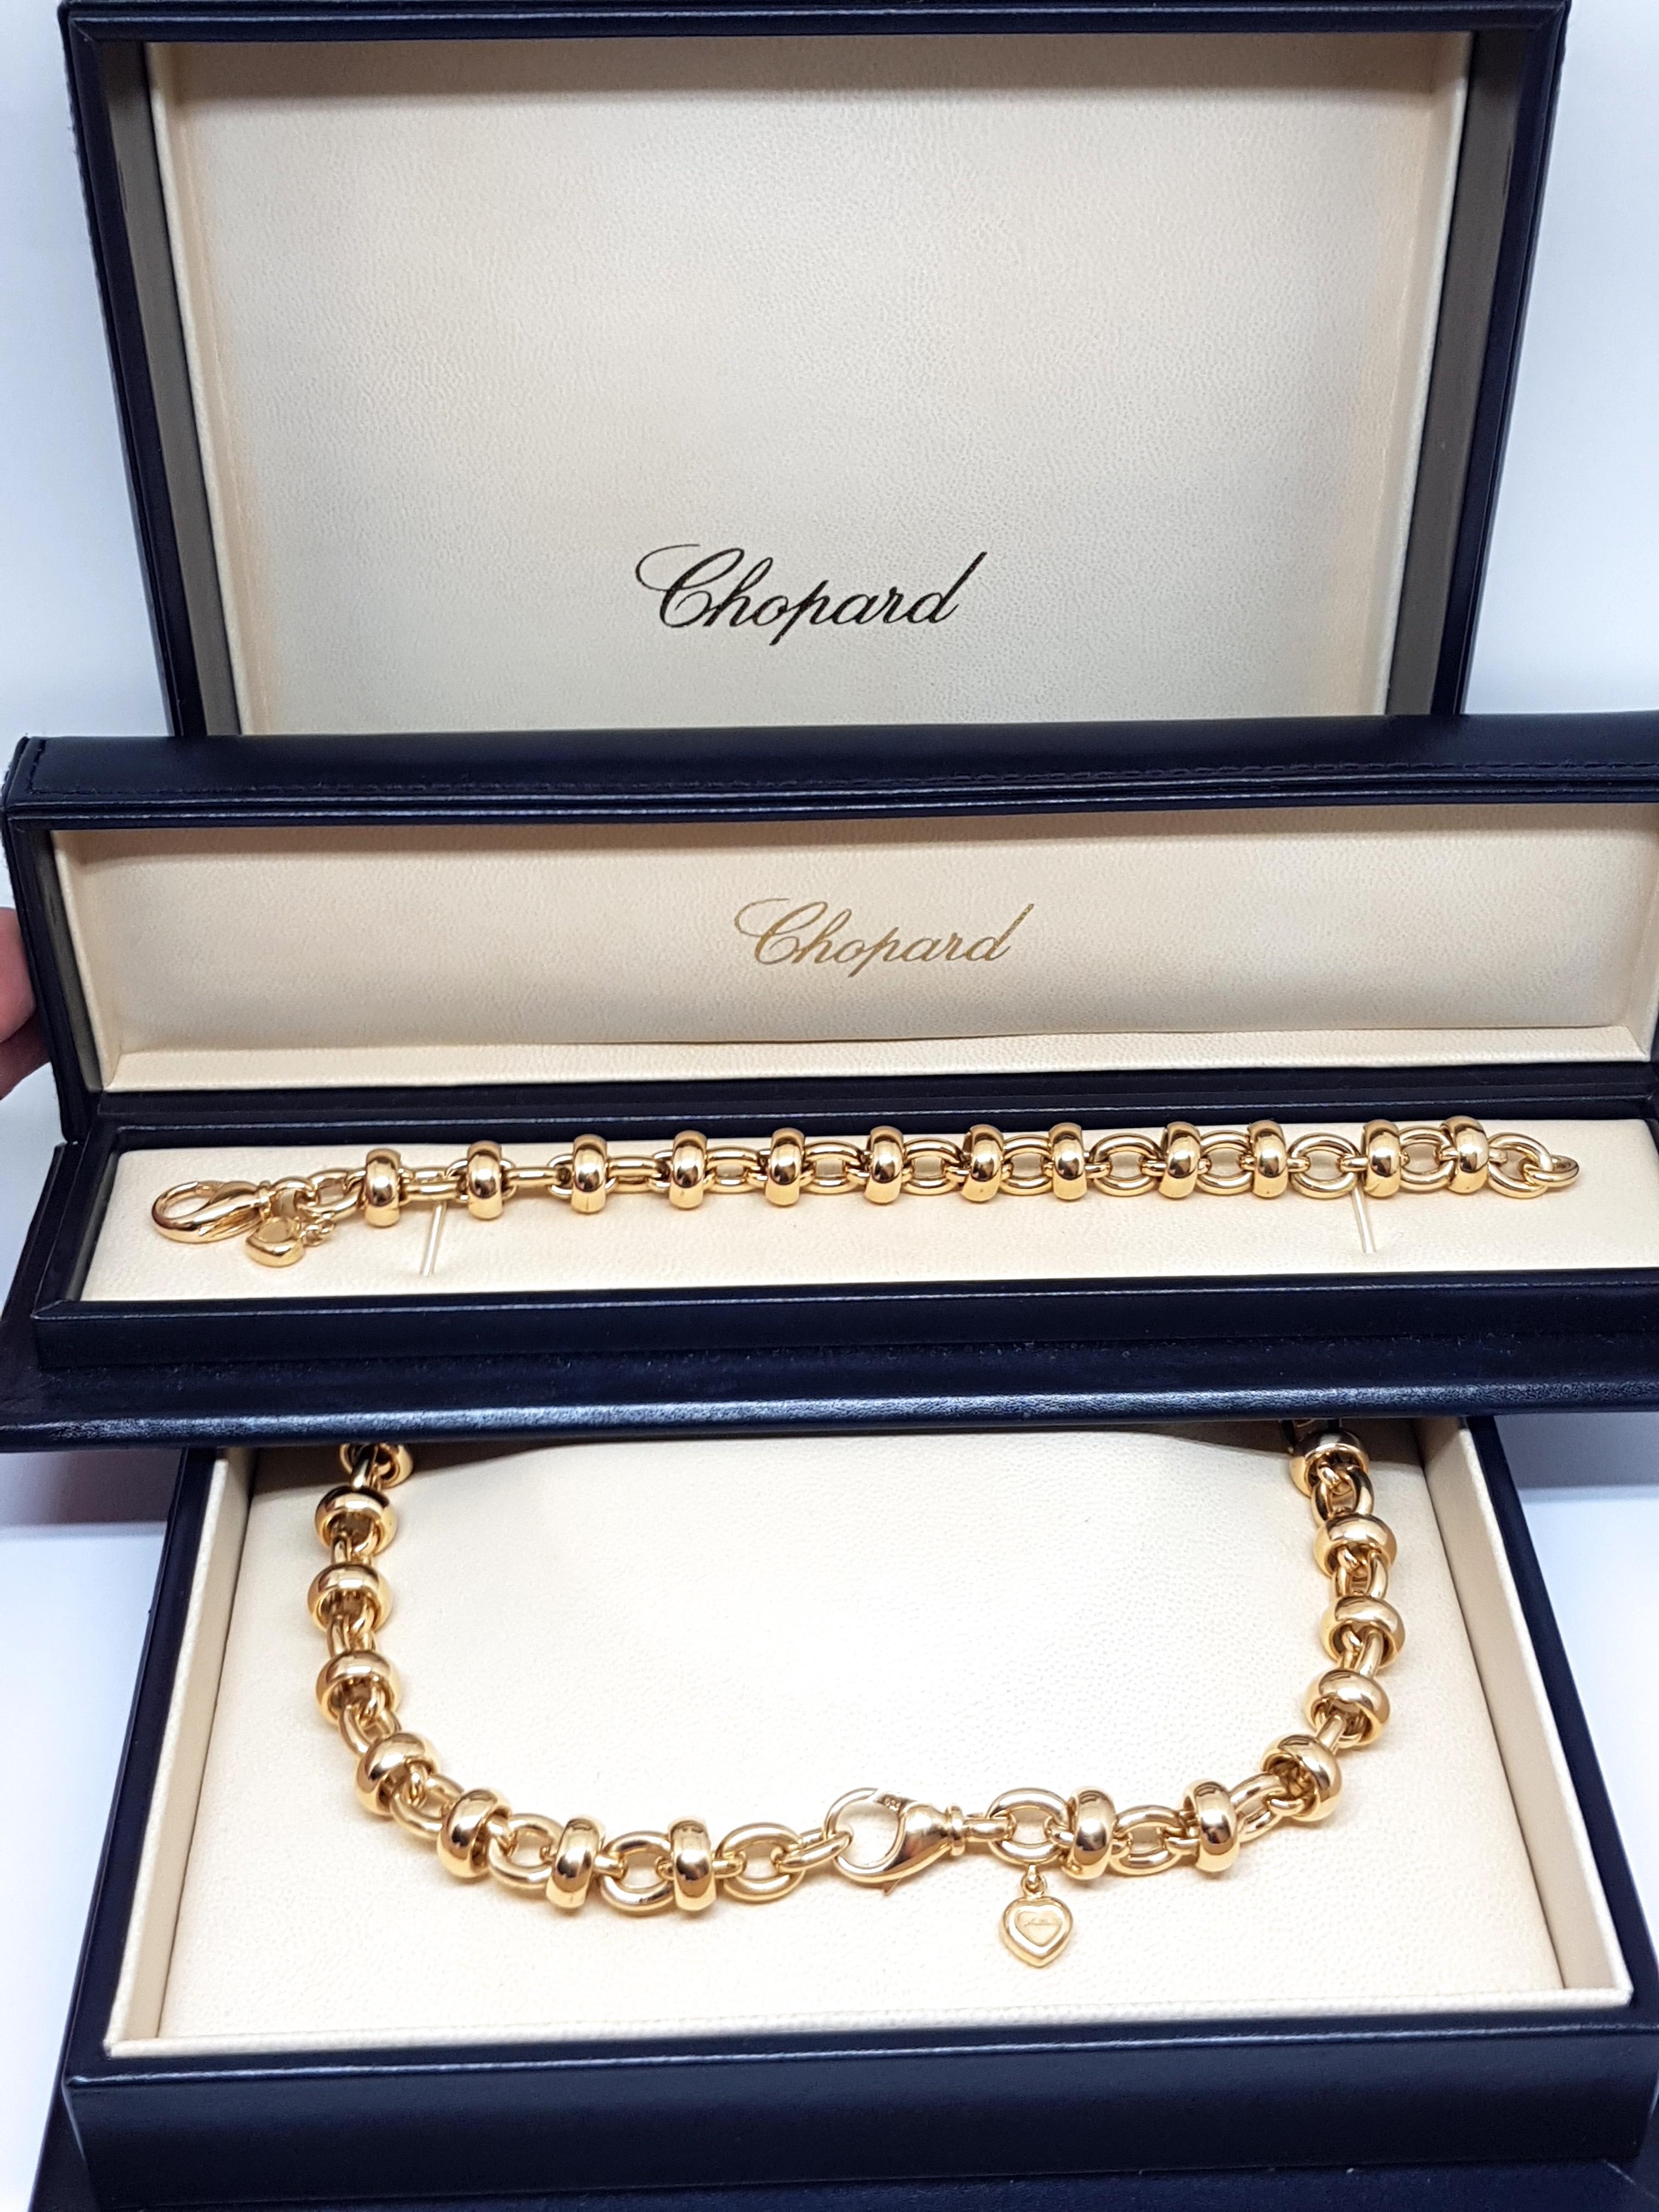 Chopard Les Chaines 18 Karat Yellow Gold Link Necklace Bracelet Set Original Box 7